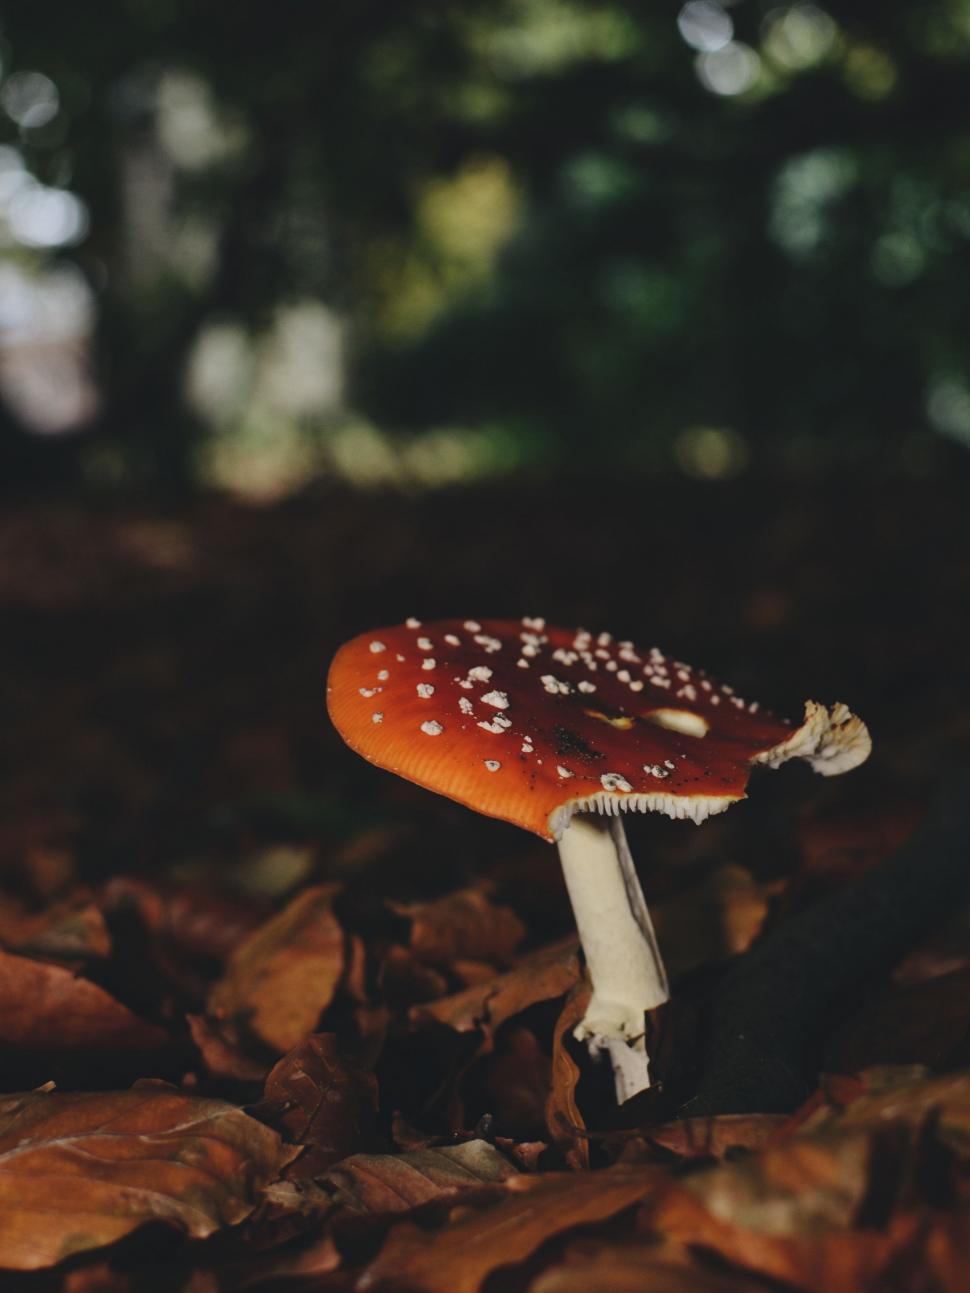 Free Image of Small Mushroom on Pile of Leaves 